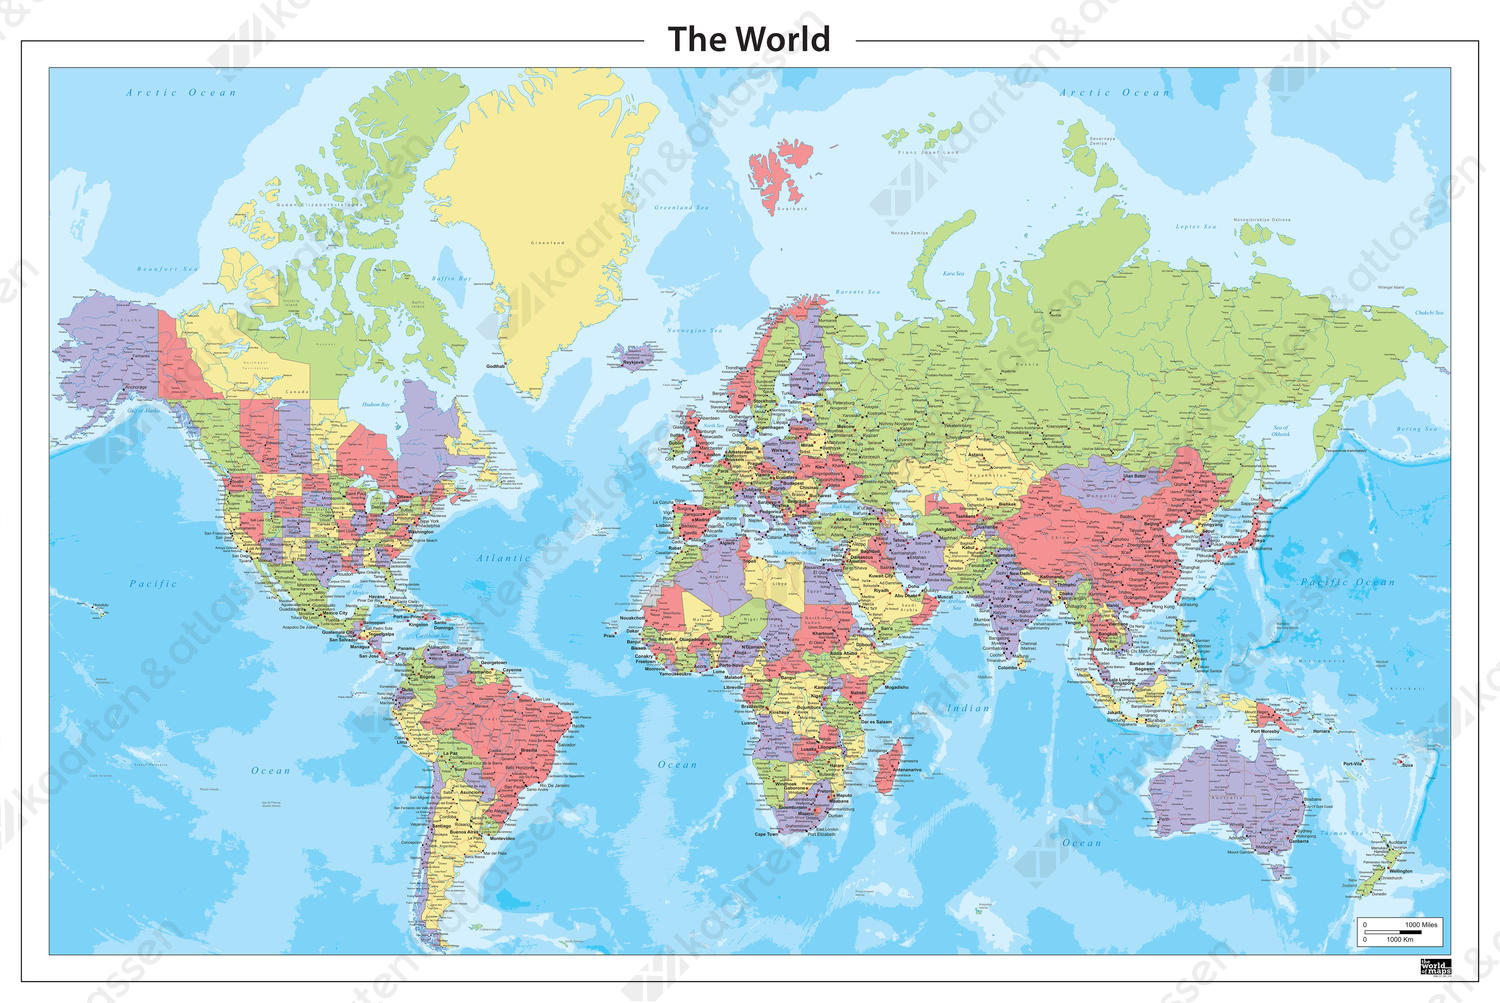 Staatkundige wereldkaart met veel plaatsen